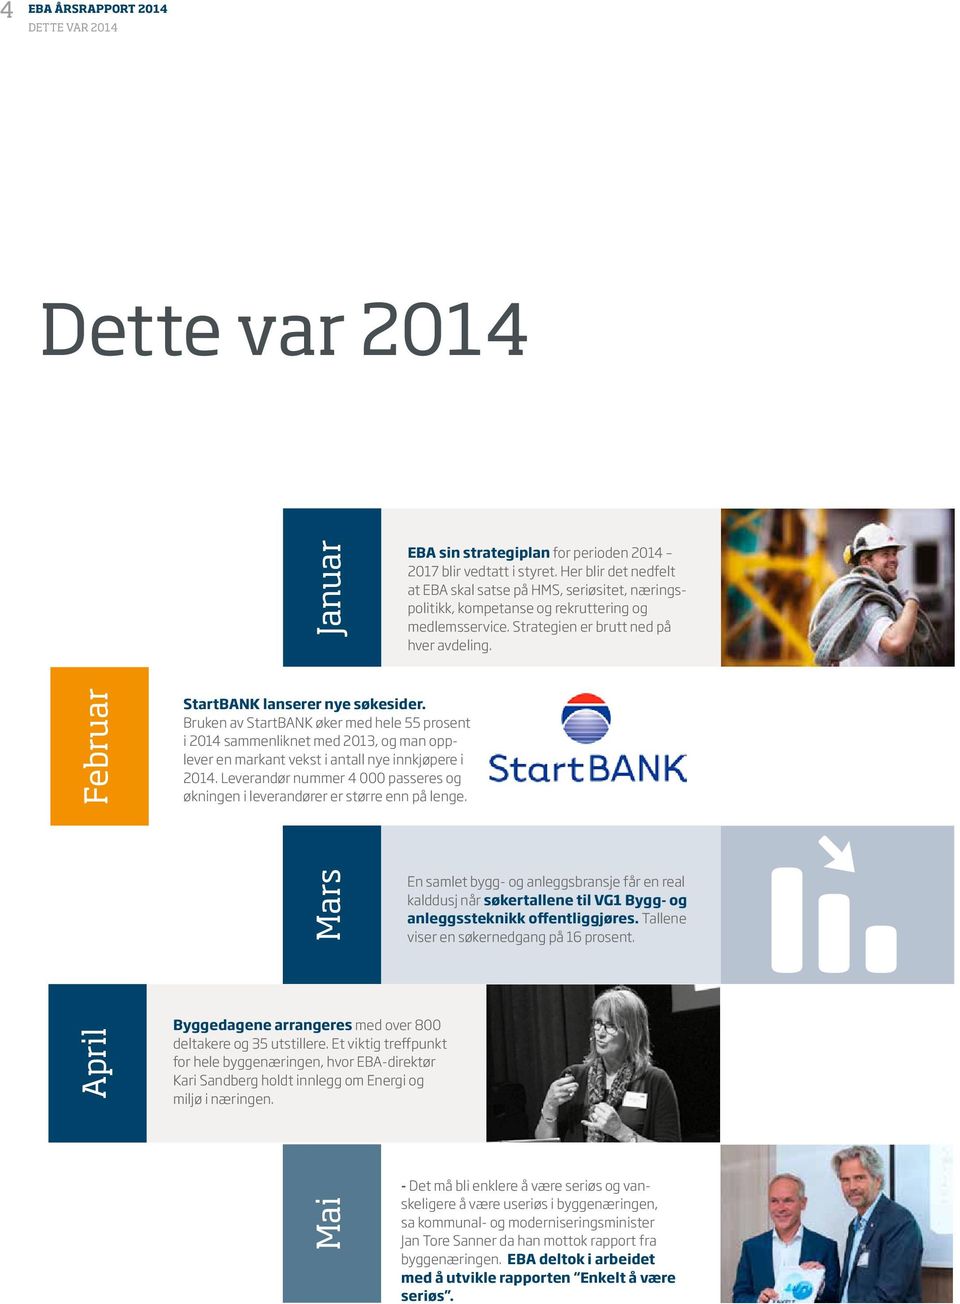 Februar StartBANK lanserer nye søkesider. Bruken av StartBANK øker med hele 55 prosent i 2014 sammenliknet med 2013, og man opplever en markant vekst i antall nye innkjøpere i 2014.